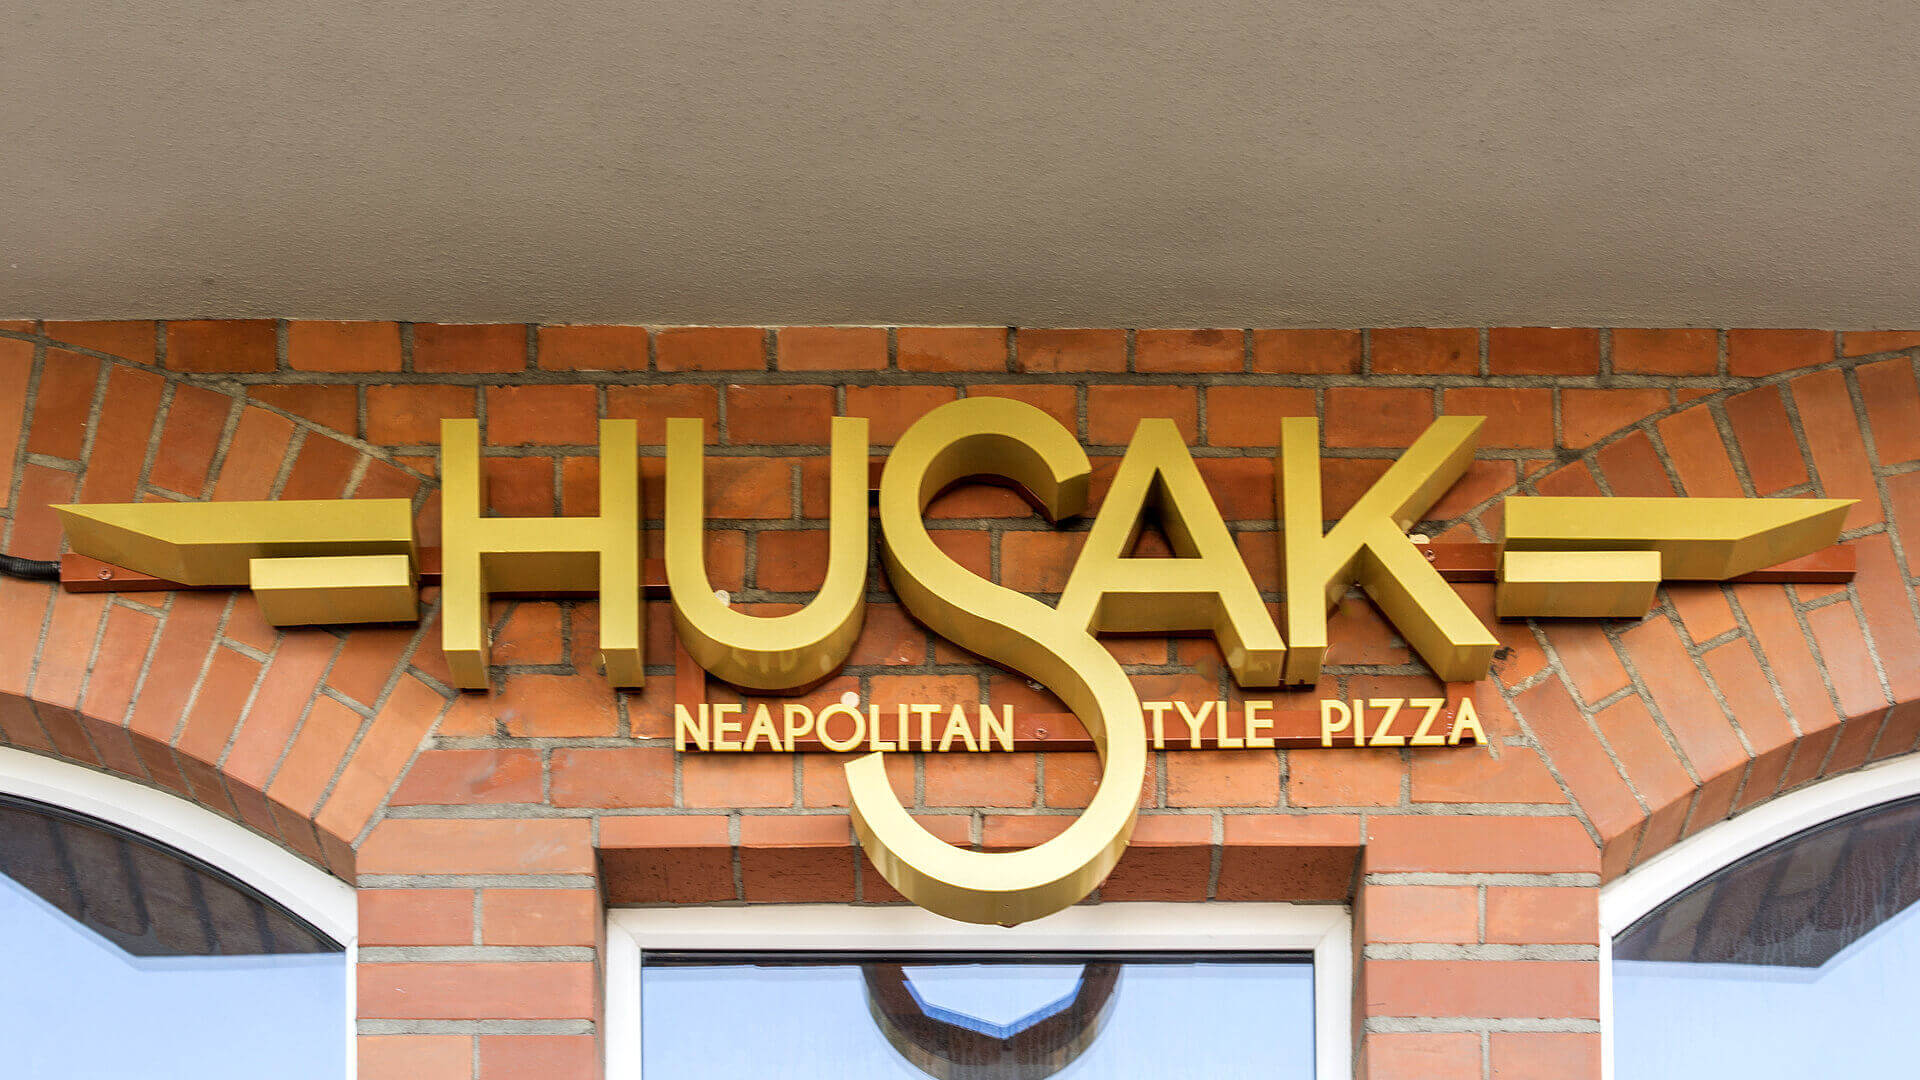 Husak Pizzeria - husak-pizzeria-zlote-buchstaben-raumbeleuchtete-fliesen-buchstaben-an-der-wand-mit-gel-über-dem-eingang-über-der-oberfläche-an-der-wand-aufgeklebt-grunwaldzka-gdansk (14)